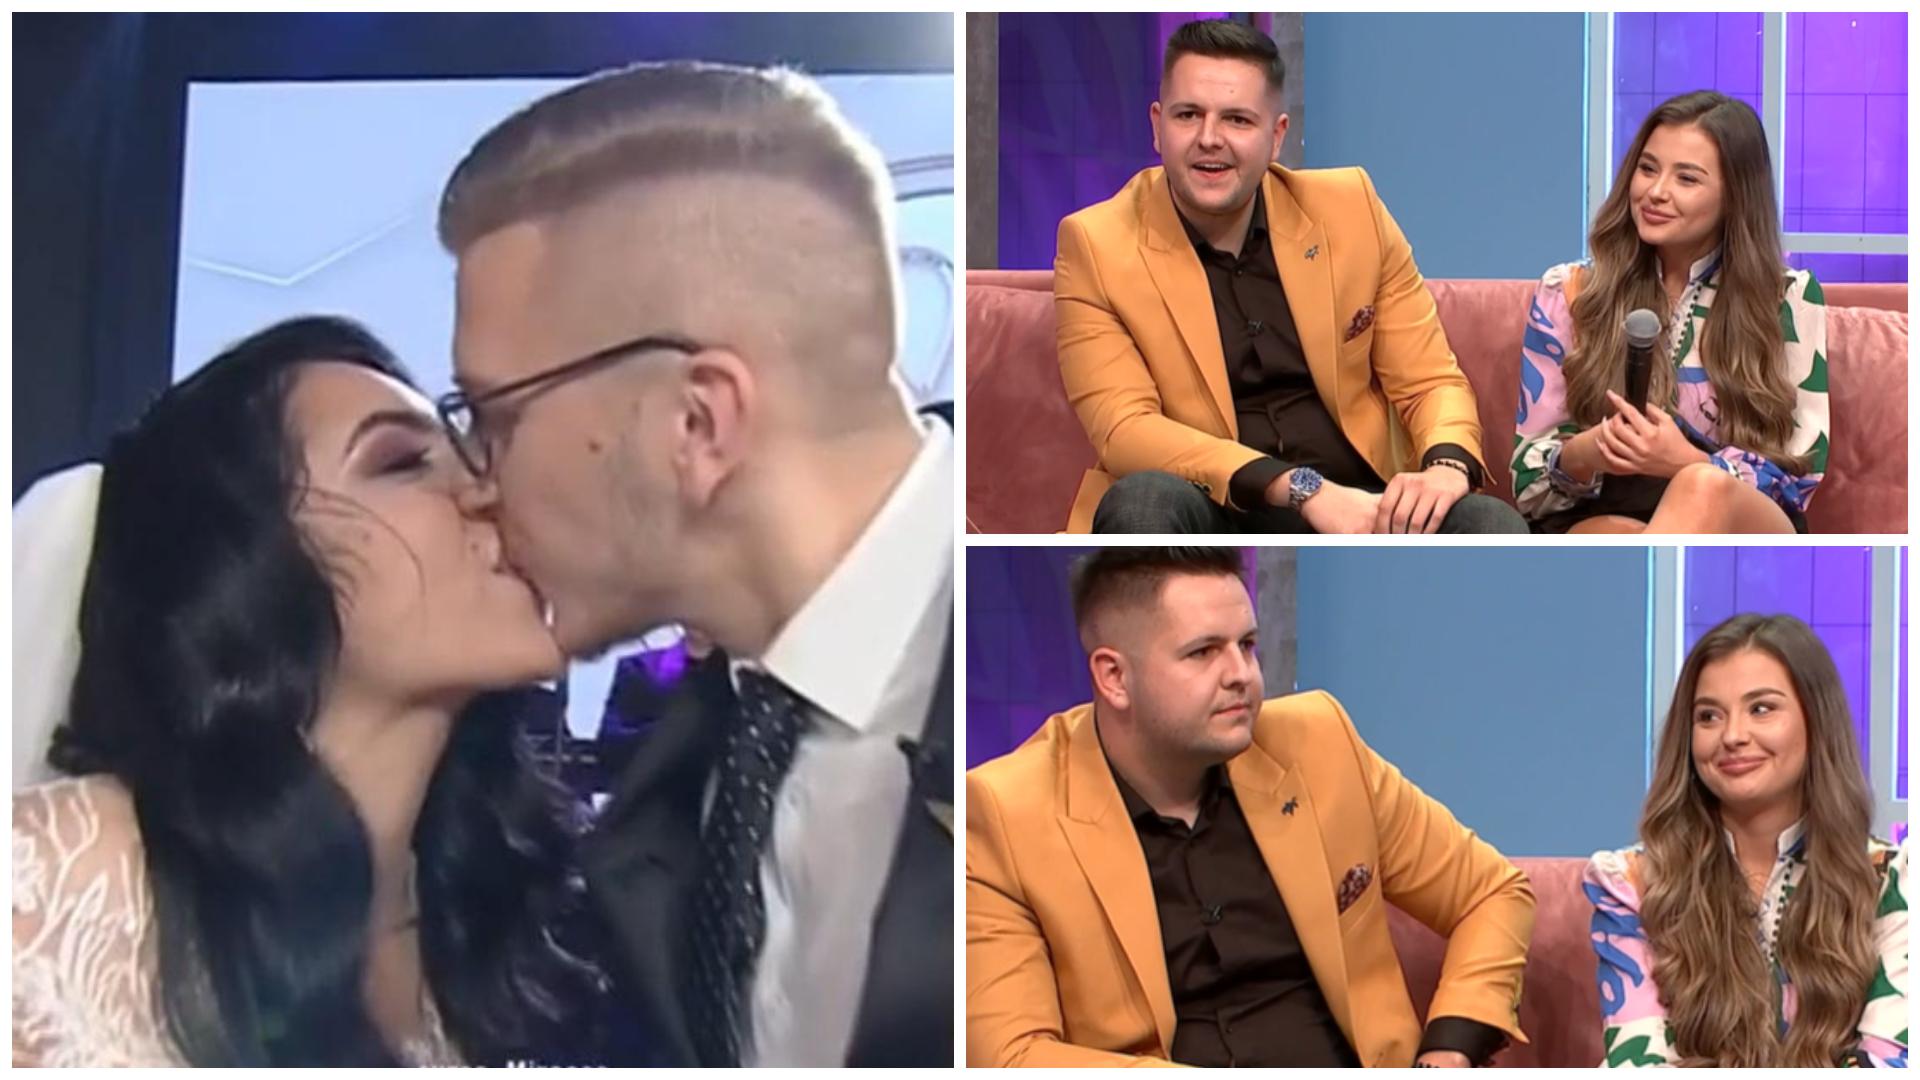 Marian Pavel și Dana, iubita lui, vor fi nași pentru Ela și Petrică Nemeș, câștigătorii sezonului 4 Mireasa: „Să vină nunta!”